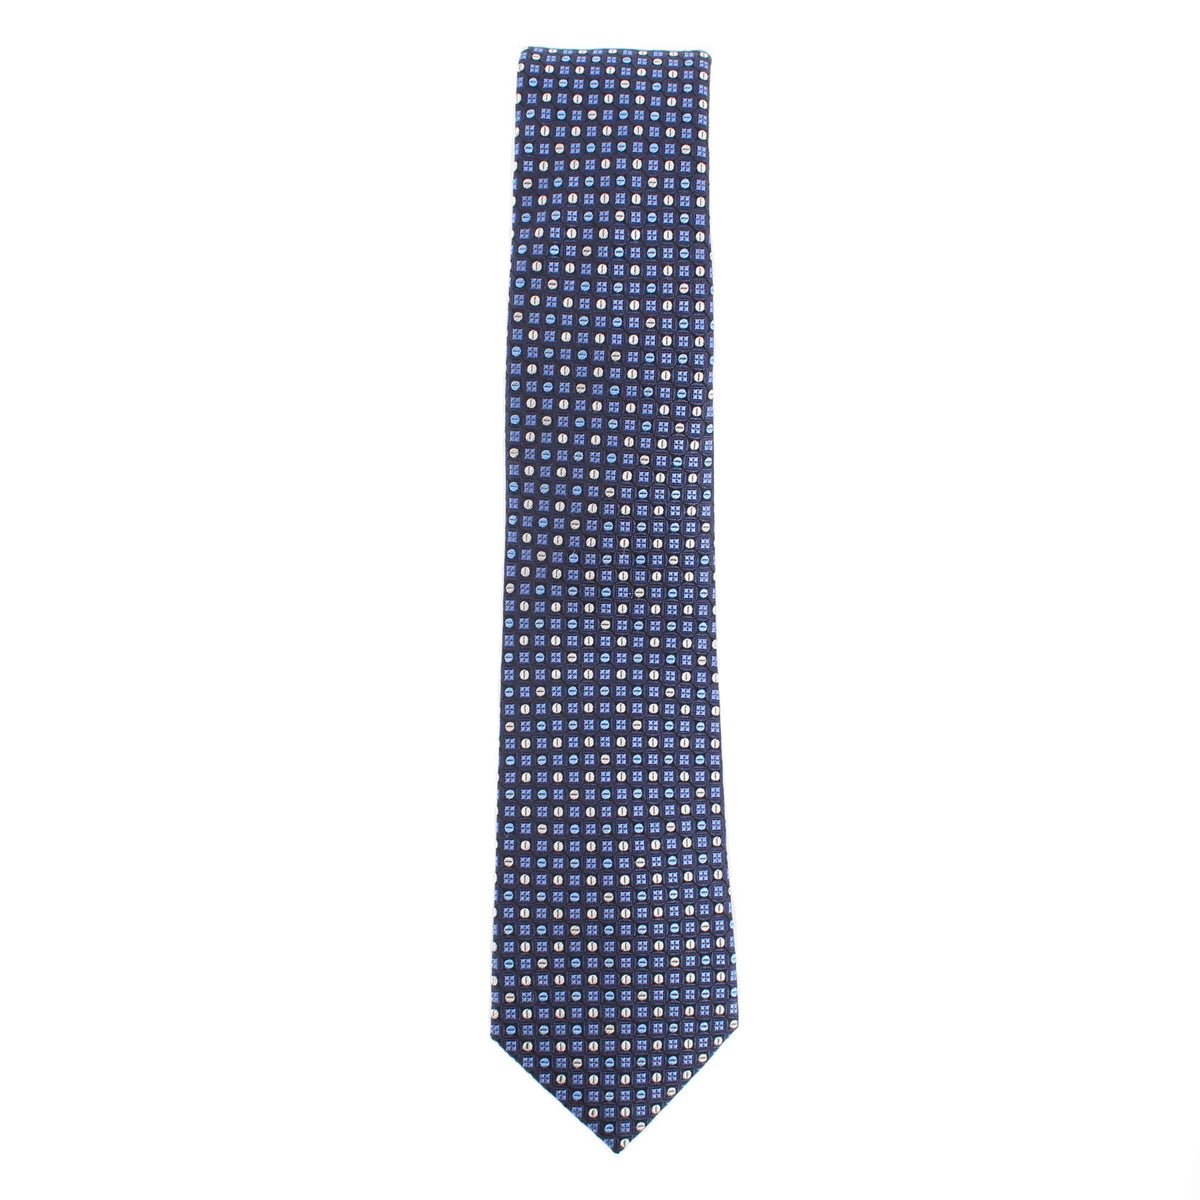 Cravate texturée